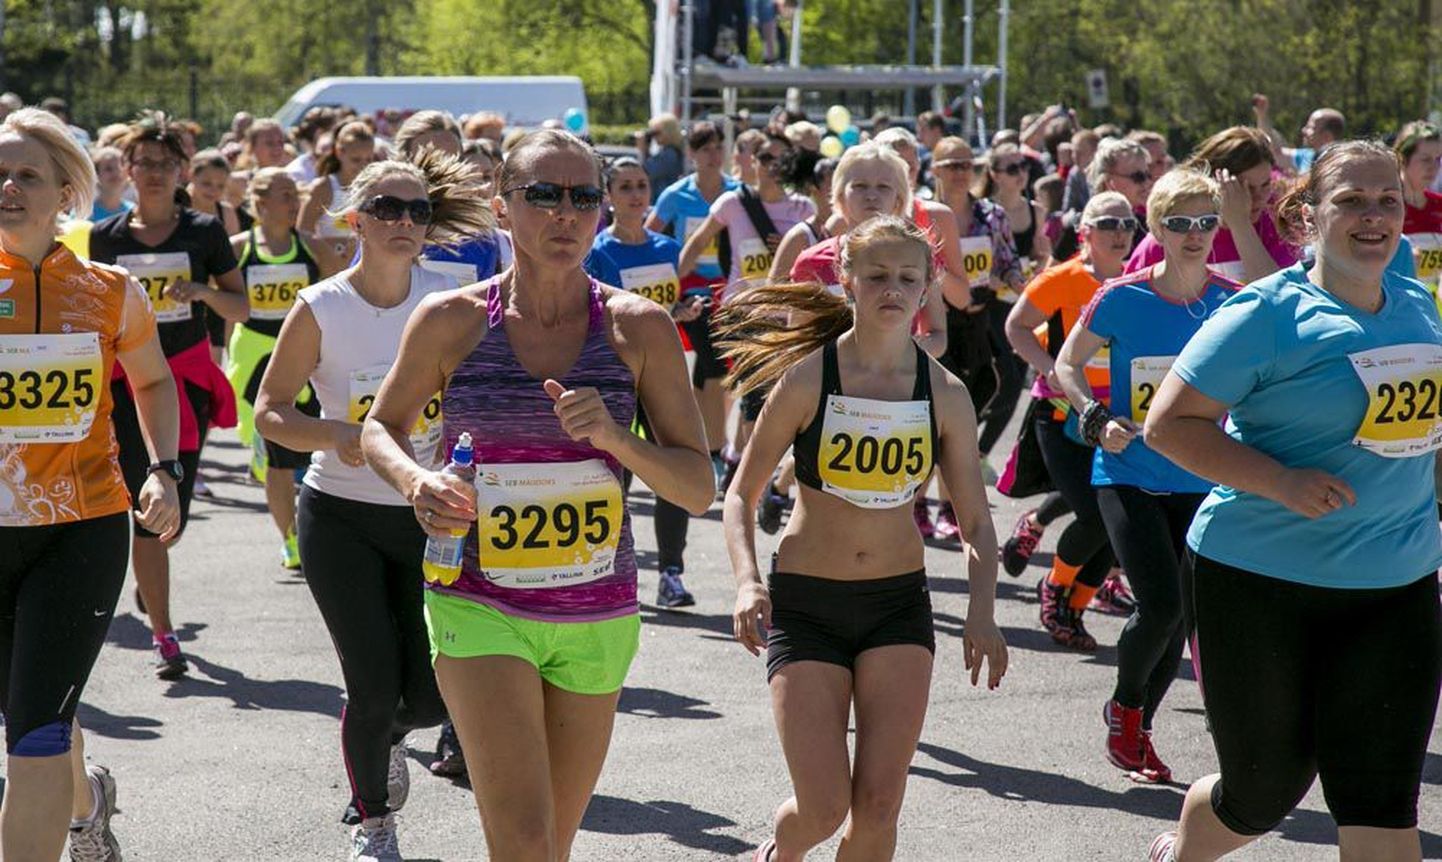 Laupäeval 27. korda toimunud, Ida-Euroopa suurimaks naiste liikumis- ja tervisesündmuseks pürgiv SEB maijooks tõi Tallinna lauluväljakule rekordiliselt 16 298 eri vanuses liikumisharrastajat.